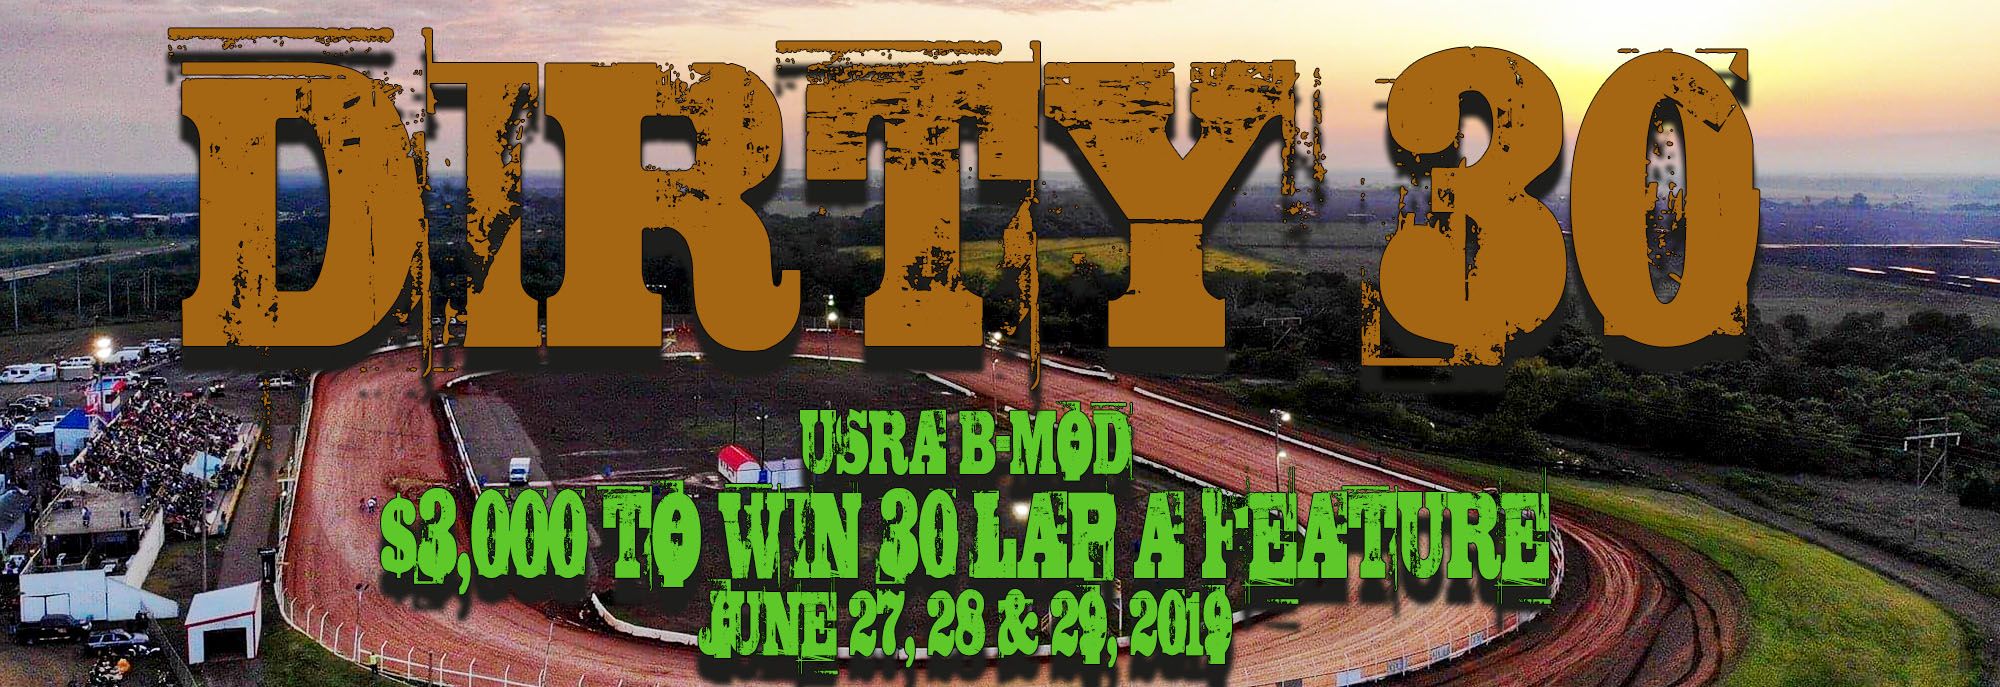 Dirty 30 - USRA B-Mod Special - $3,000 to win!